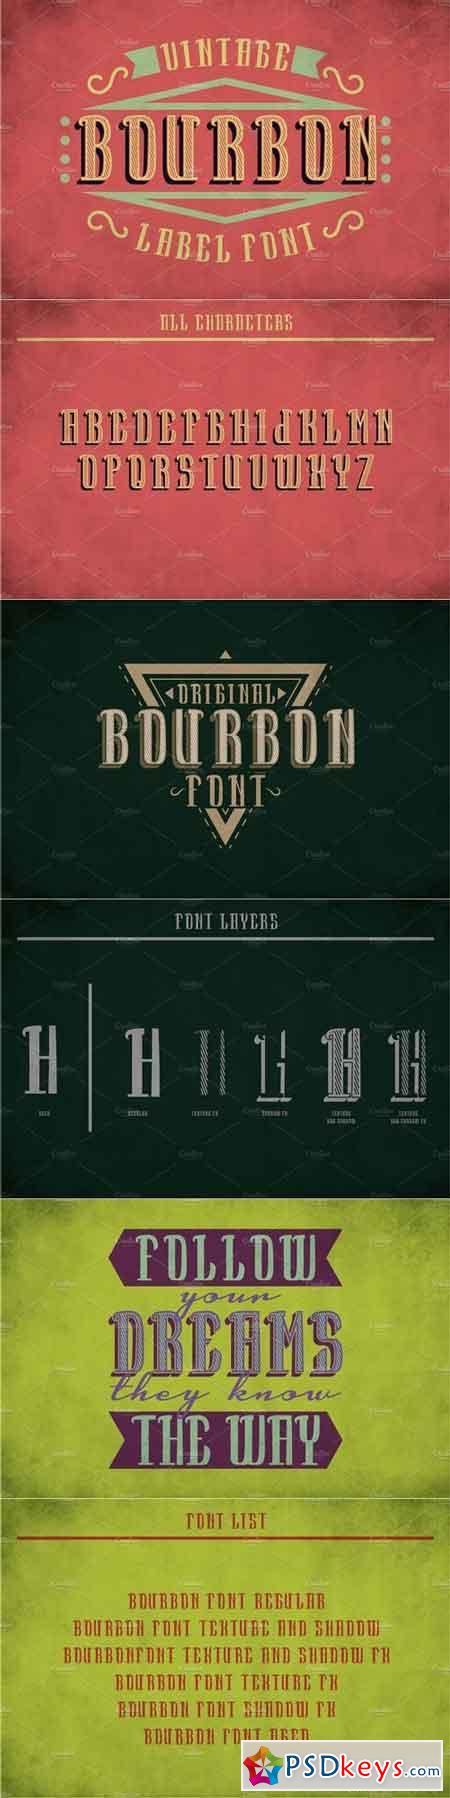 Bourbon Vintage Label Typeface 1877495